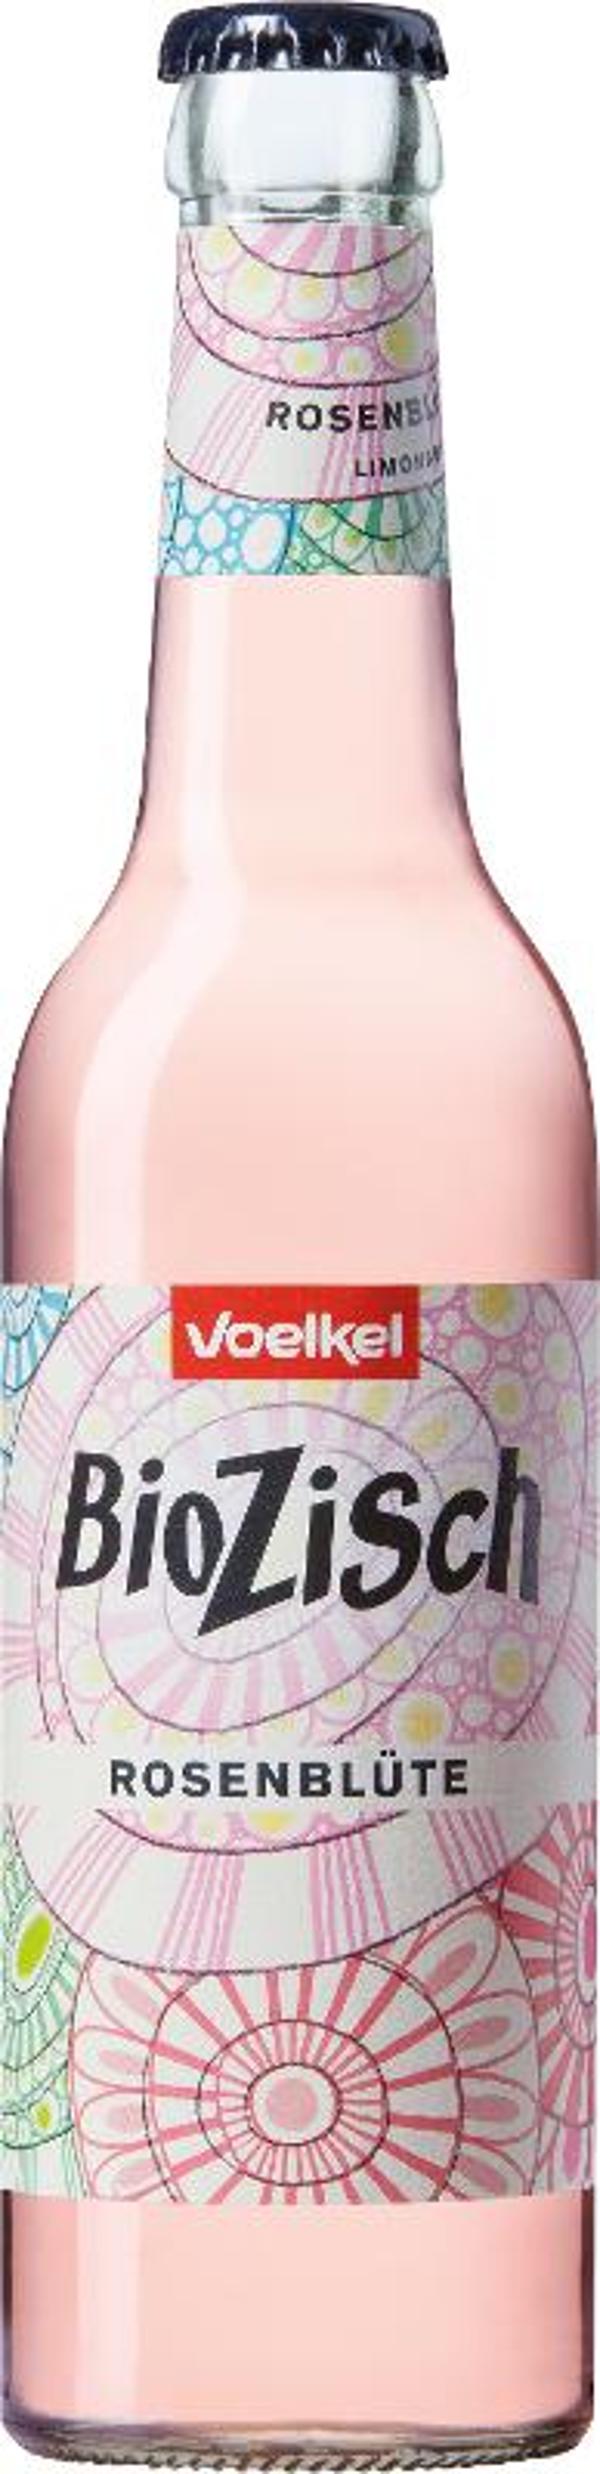 Produktfoto zu BioZisch Rosenblüte 0,33l